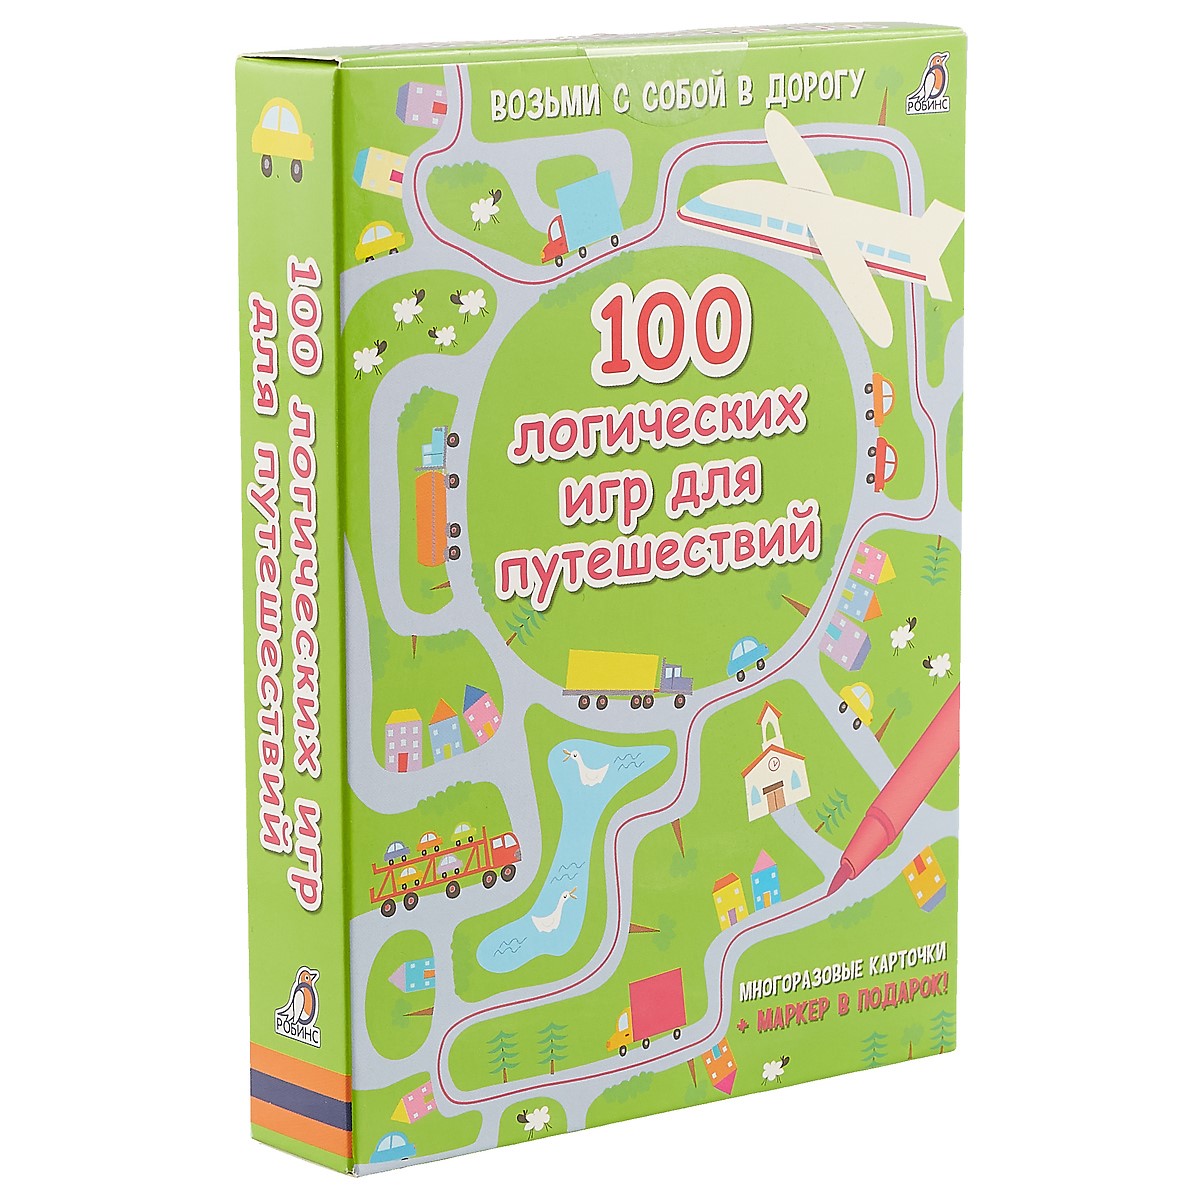 асборн карточки 100 занимательных игр для путешествий Асборн - карточки. 100 логических игр для путешествий